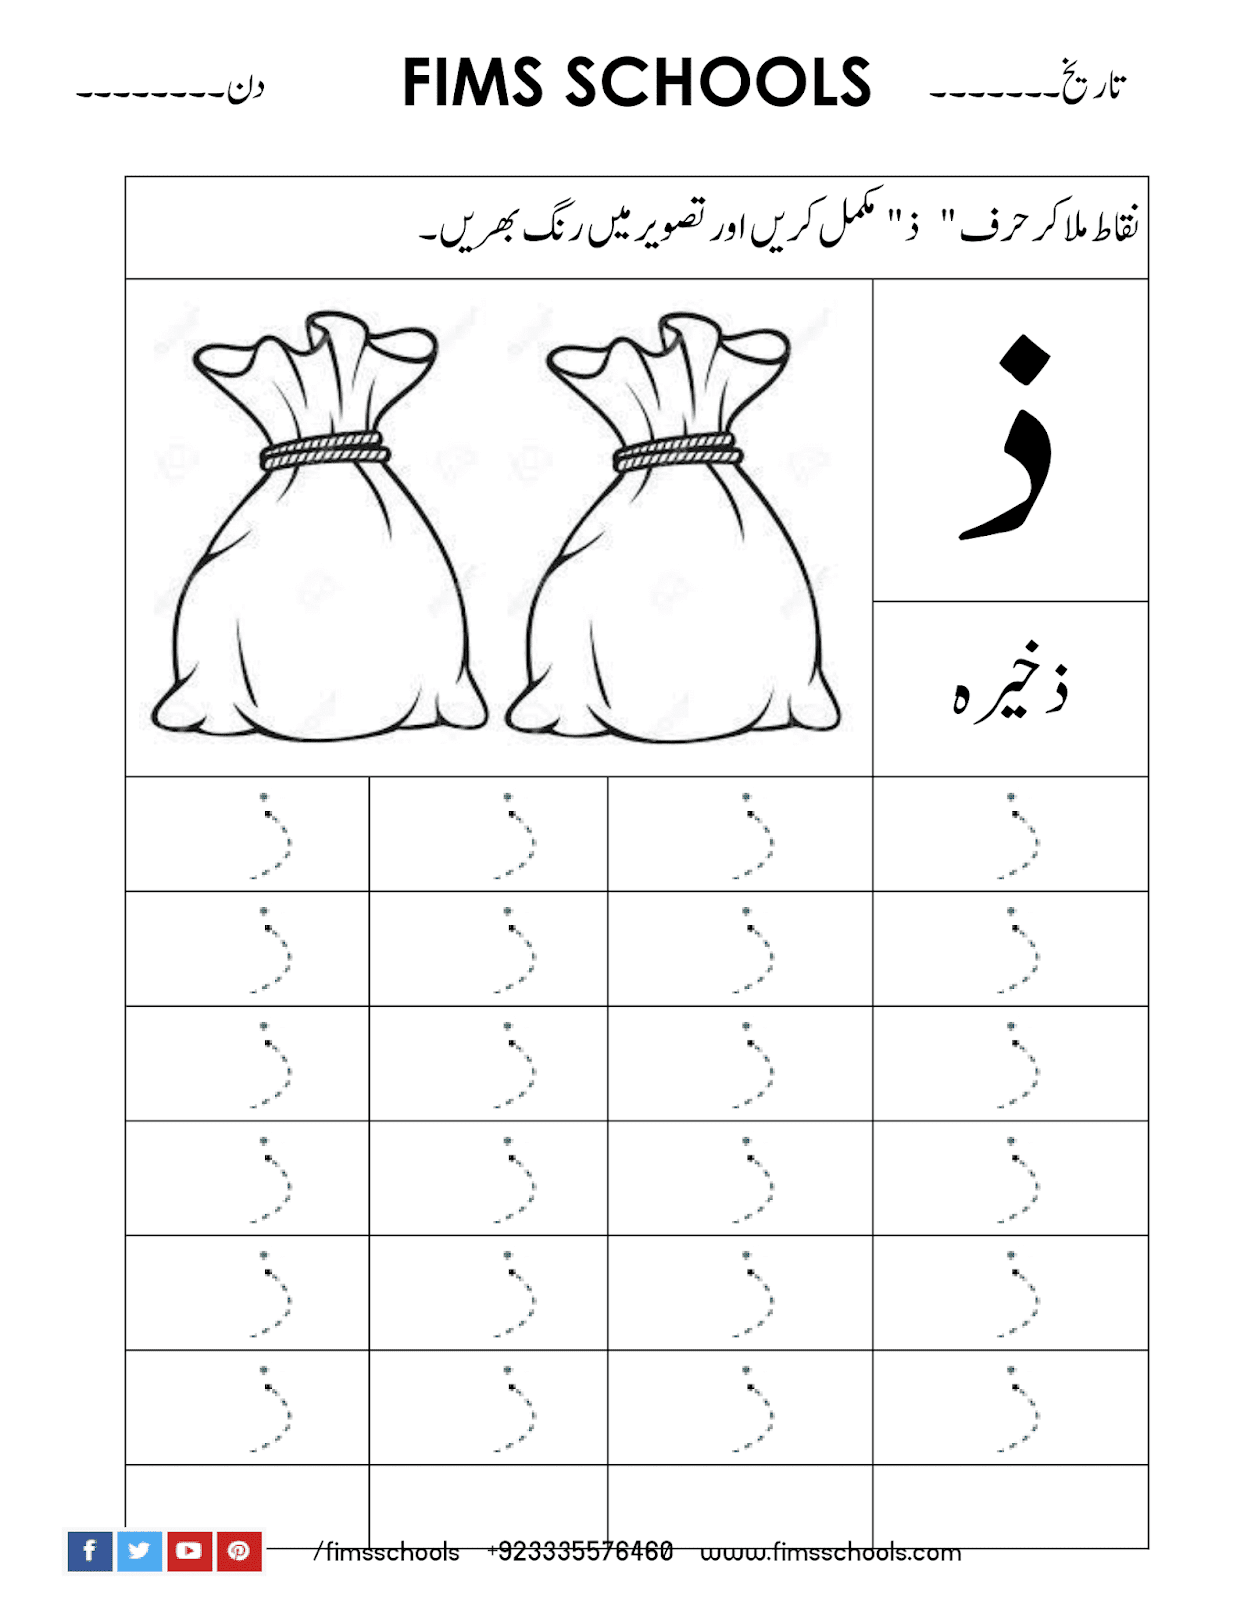 Zaal (ذ) Urdu Tracing Worksheet - Free Printable And Free